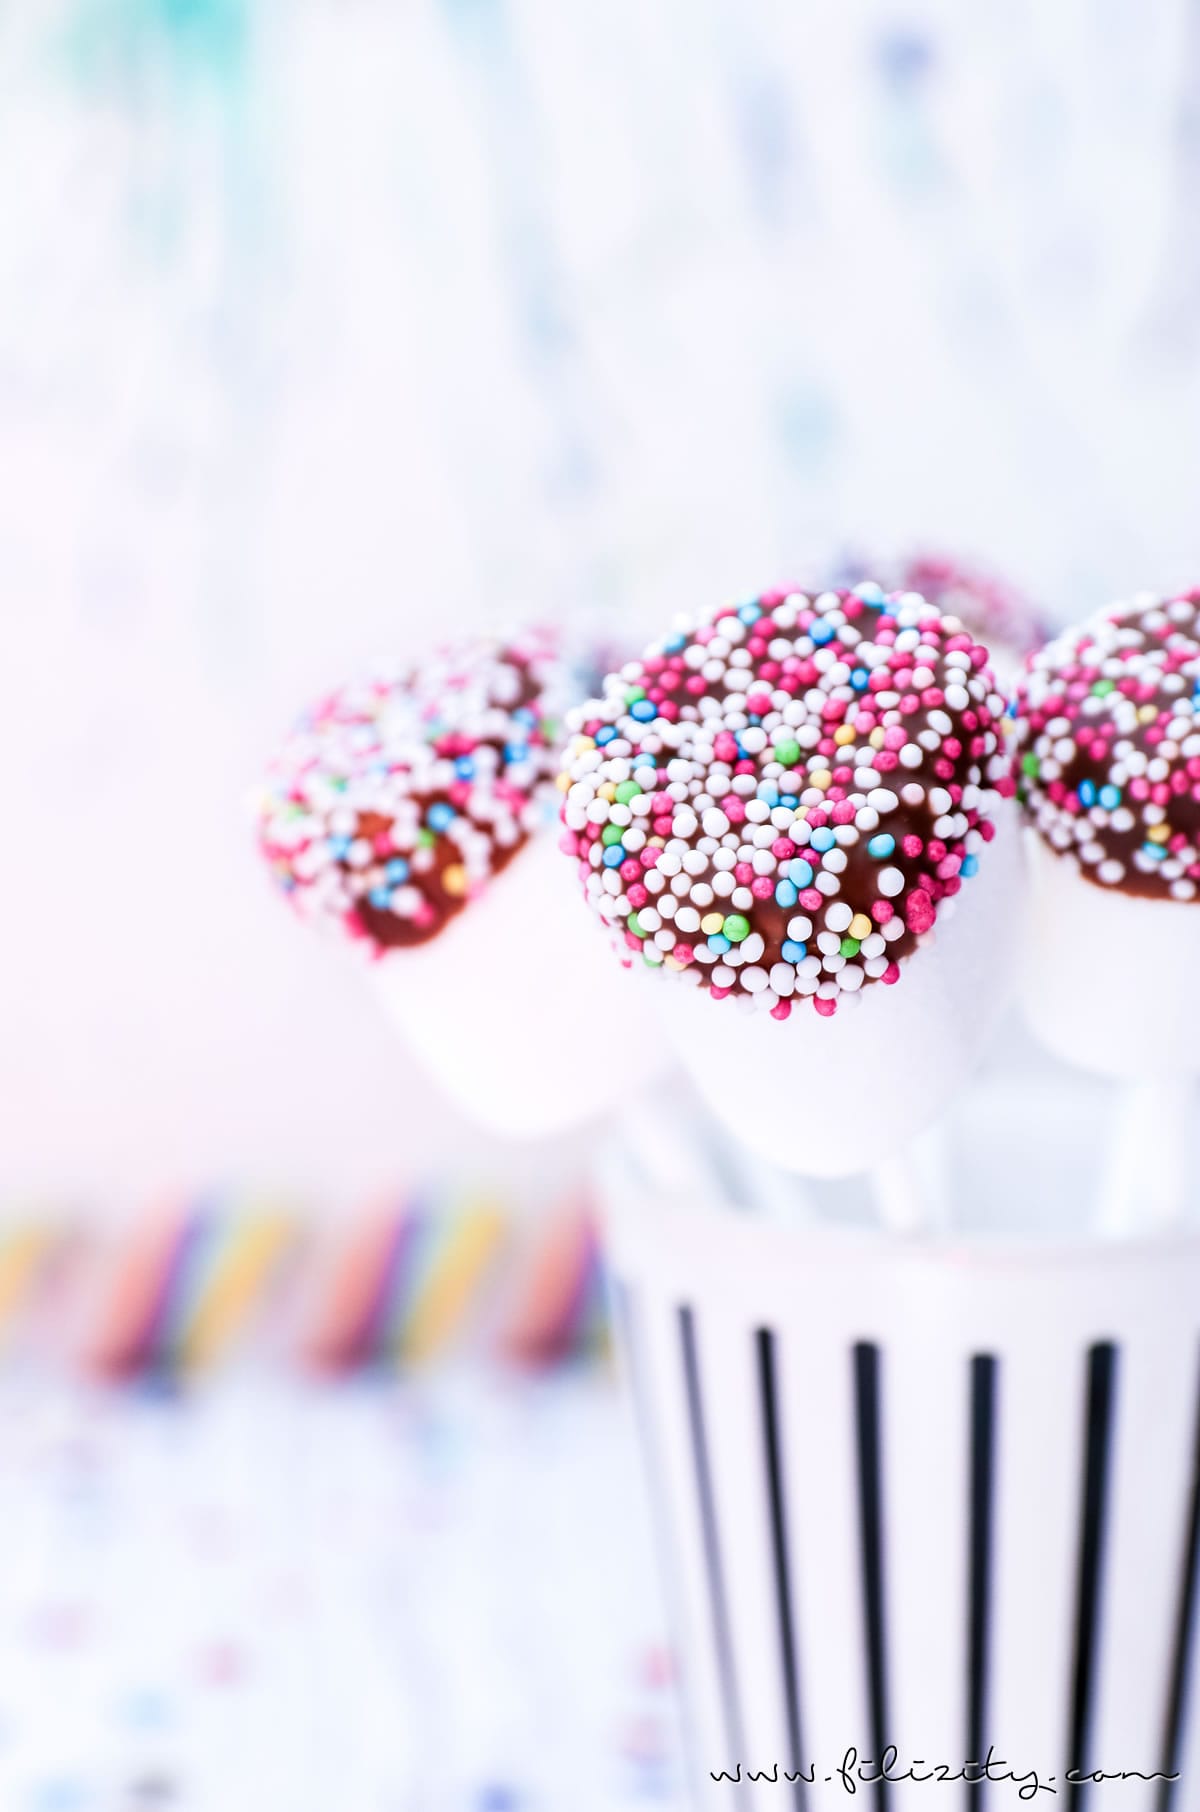 Schnelles Karnevals-Rezept für Marshmallow-Schoko-Pops mit buntem Zucker-Konfetti | Auch perfekt als Party-Food für Kinder-Geburtstage | Filizity.com | Food-Blog aus dem Rheinland #fasching #karneval #cakepops